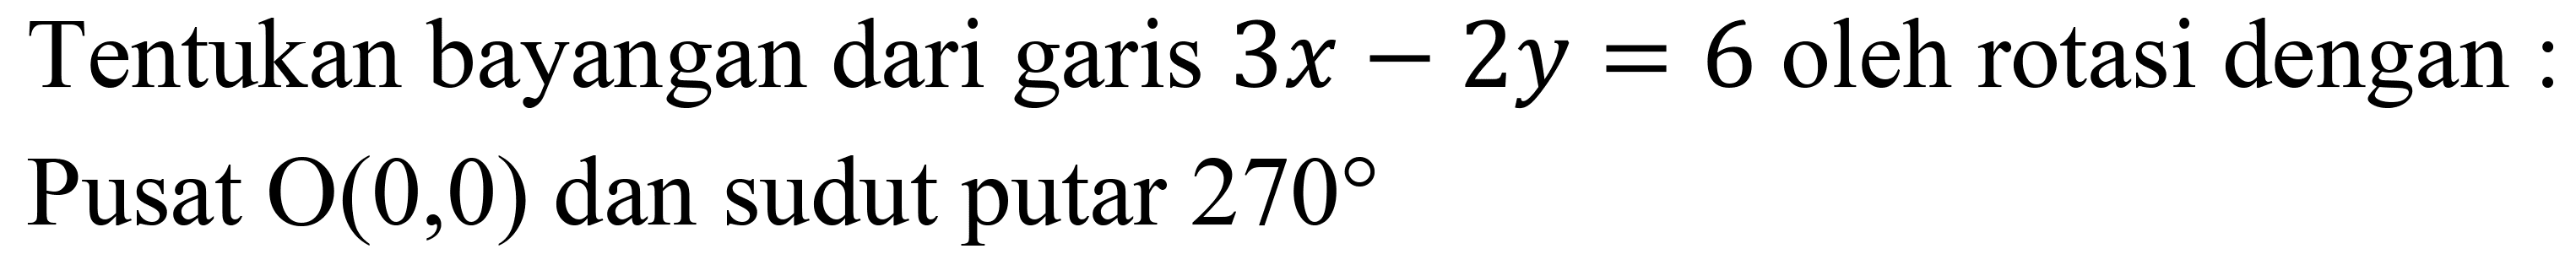 Tentukan bayangan dari garis  3 x-2 y=6  oleh rotasi dengan : Pusat  O(0,0)  dan sudut putar  270